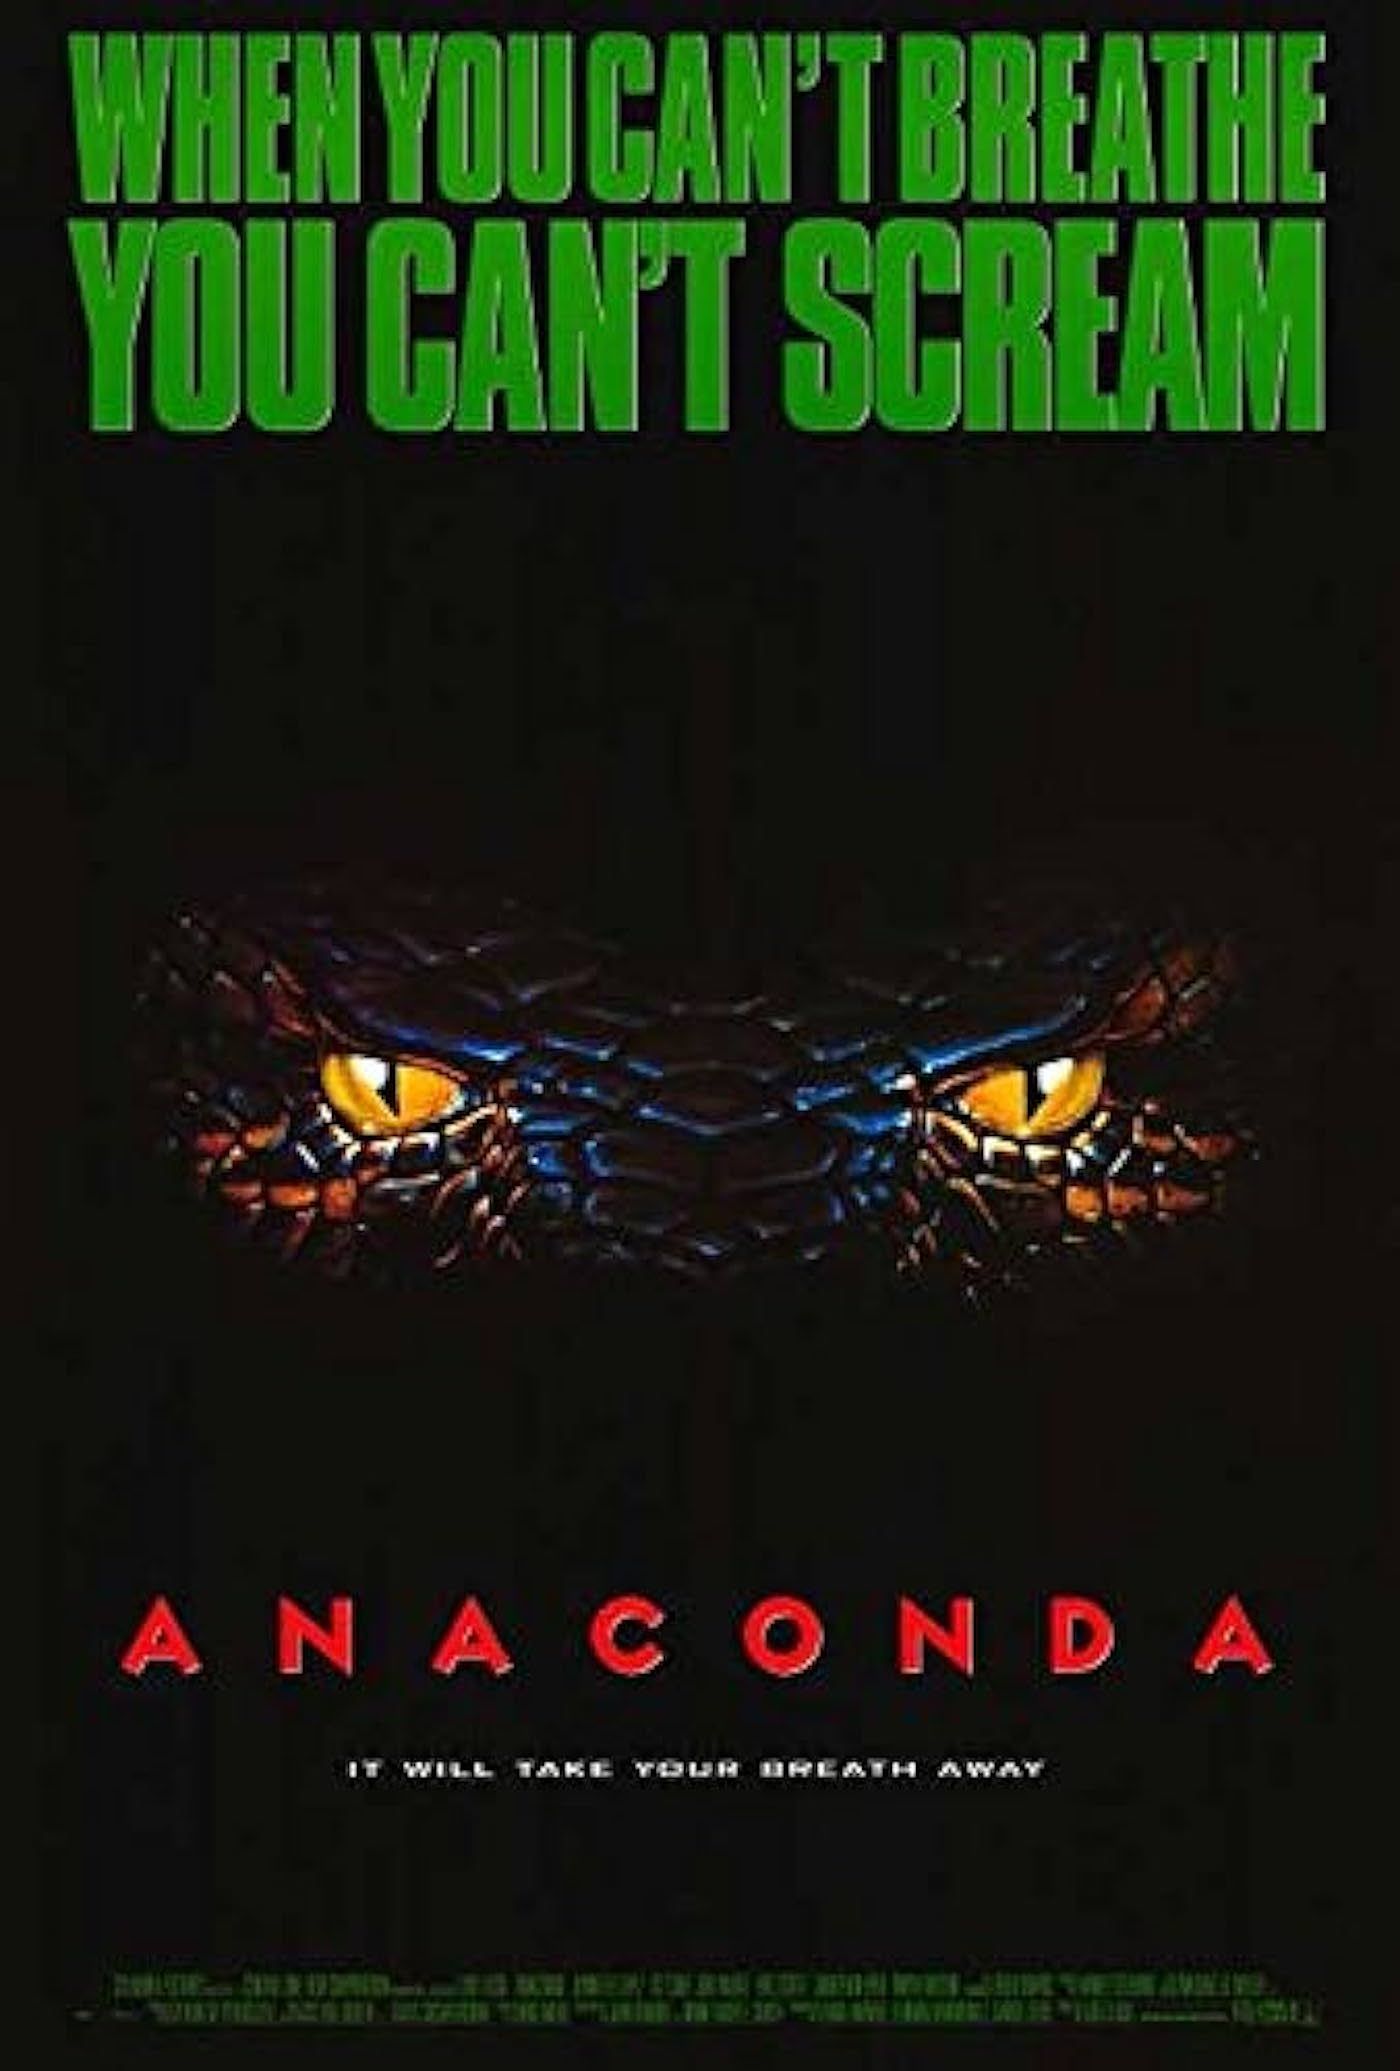 cartell de la pel·lícula anaconda